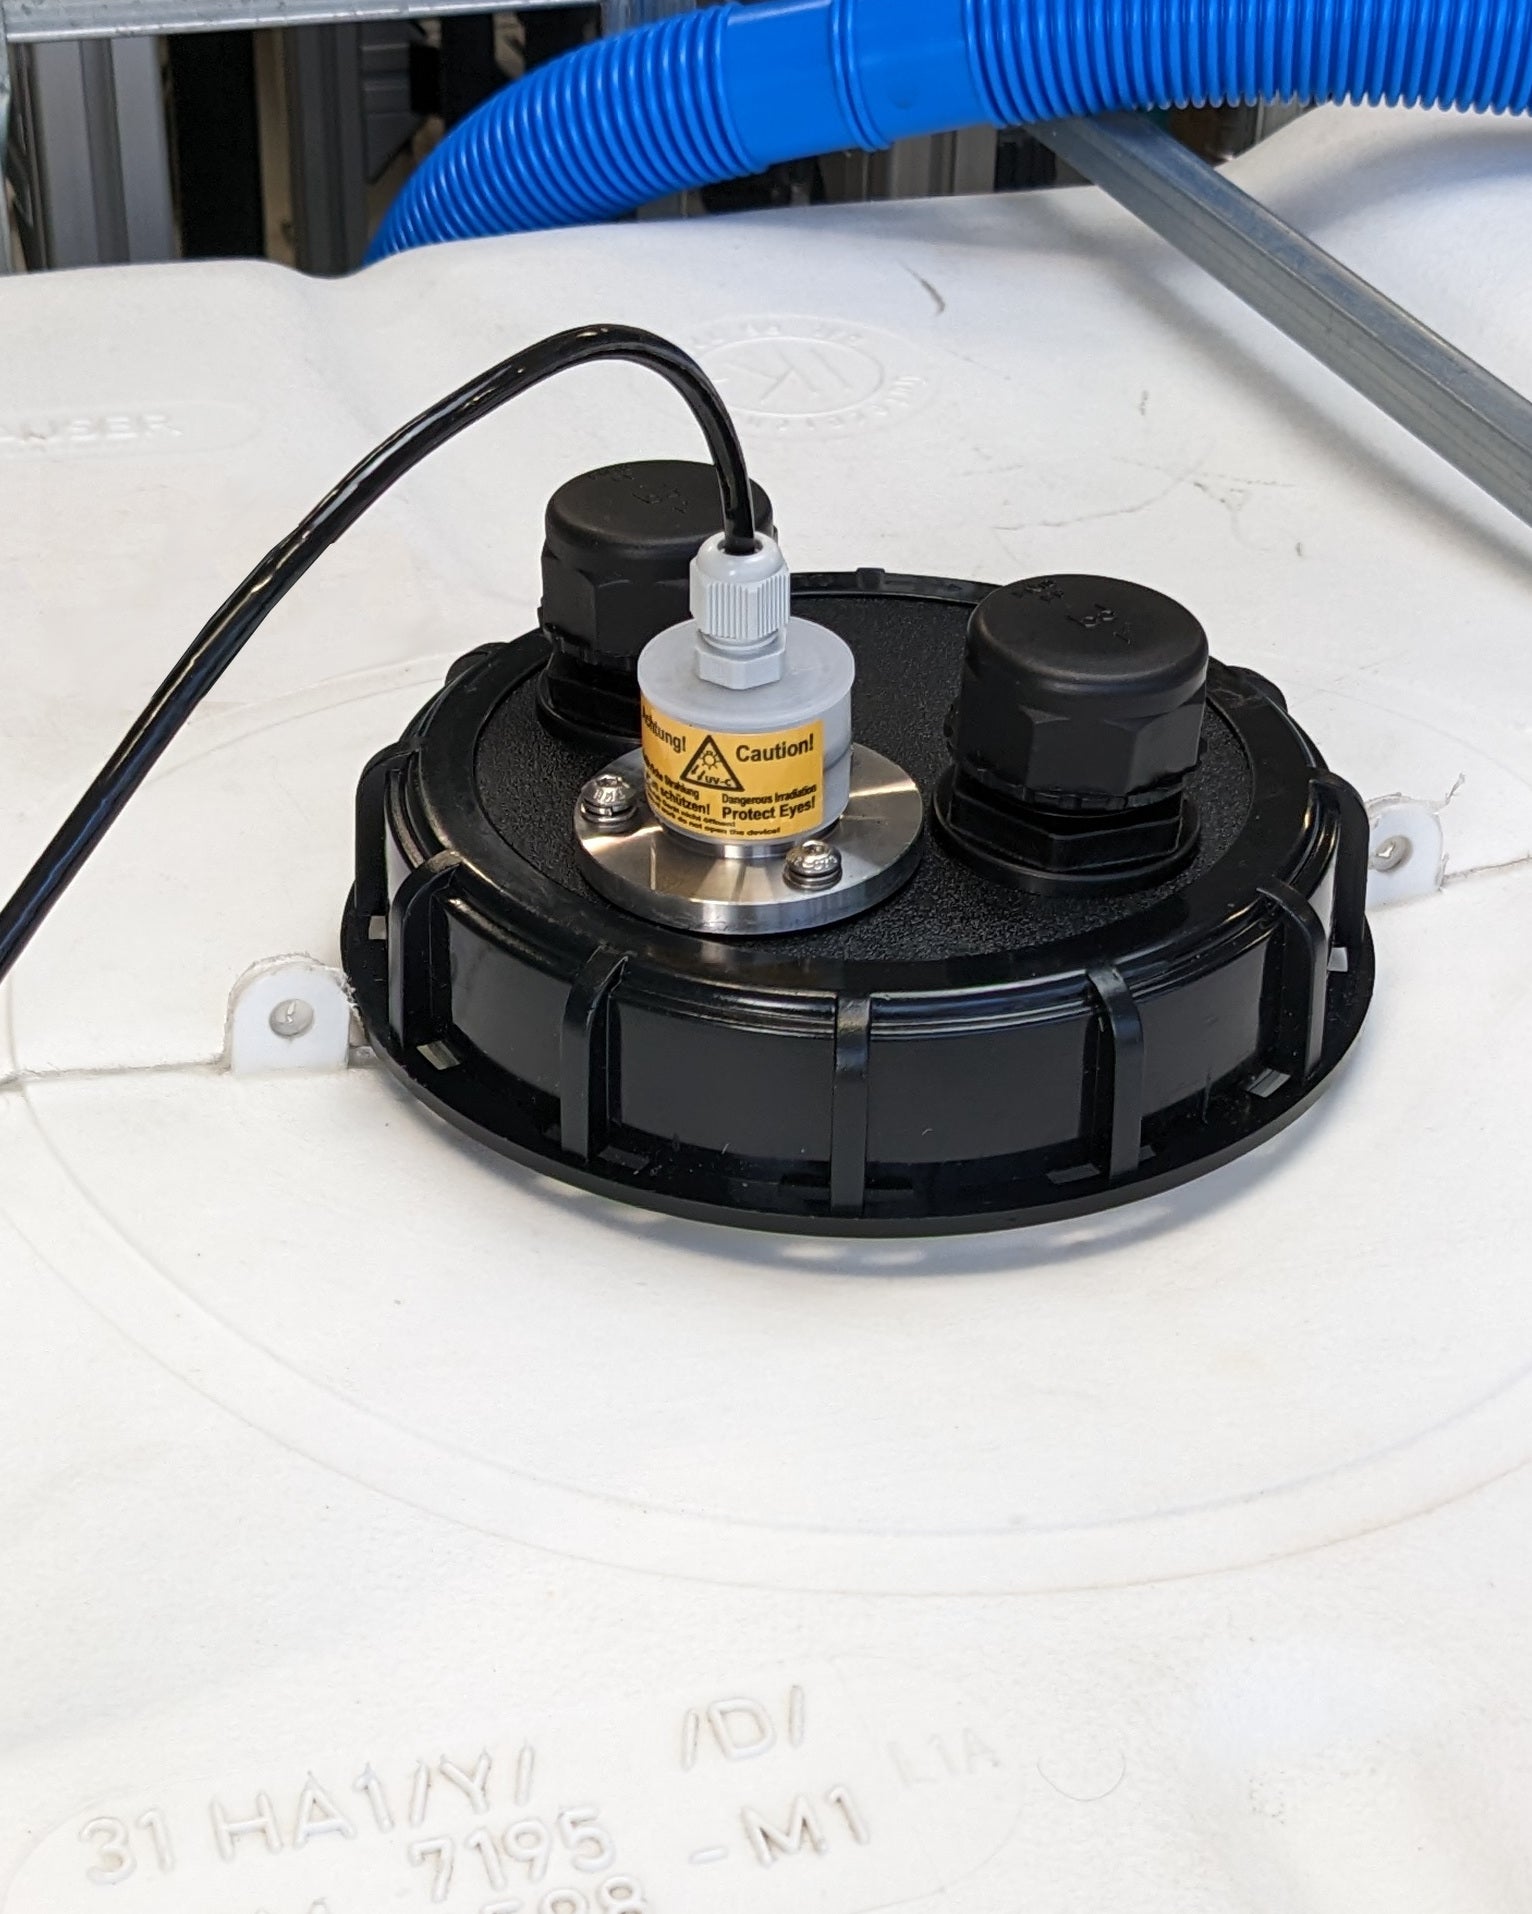 Eine Maschine mit angeschlossenem Schlauch, die hilft, Verkeimungen aus trübem Wasser oder leerem Tank effizient zu entfernen, ist die PURION IBC DN150 90W OTC SPL BS der UV Concept GmbH.